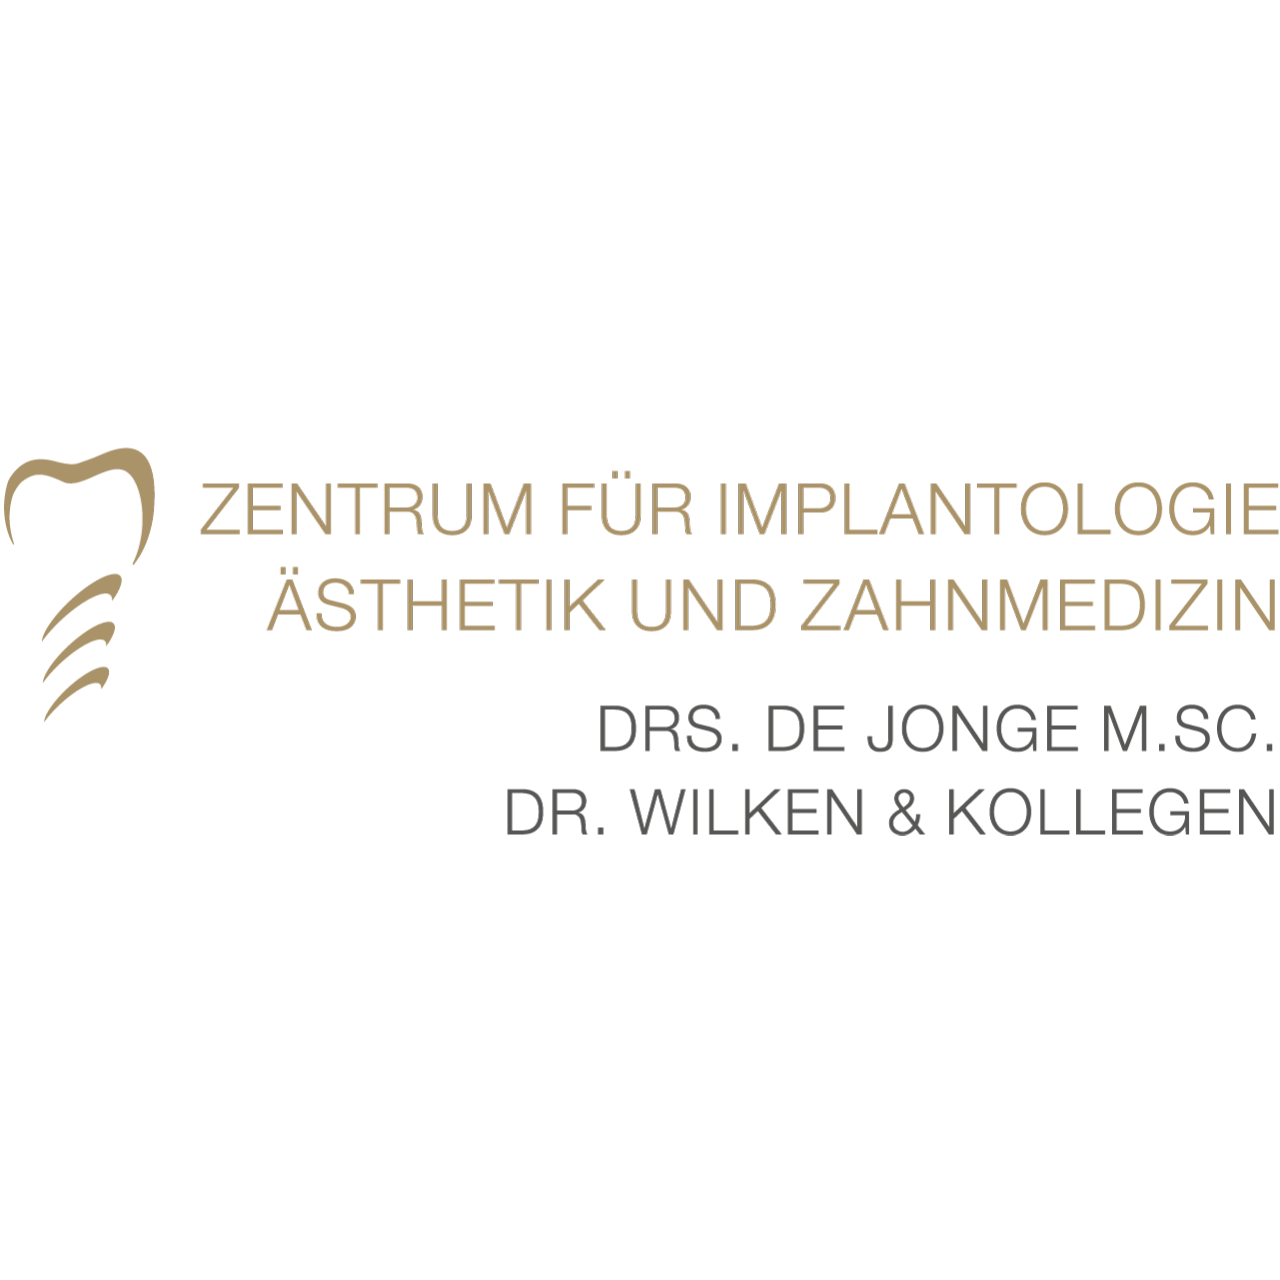 Drs. de Jonge, Dr. Wilken & Kollegen in Papenburg - Logo